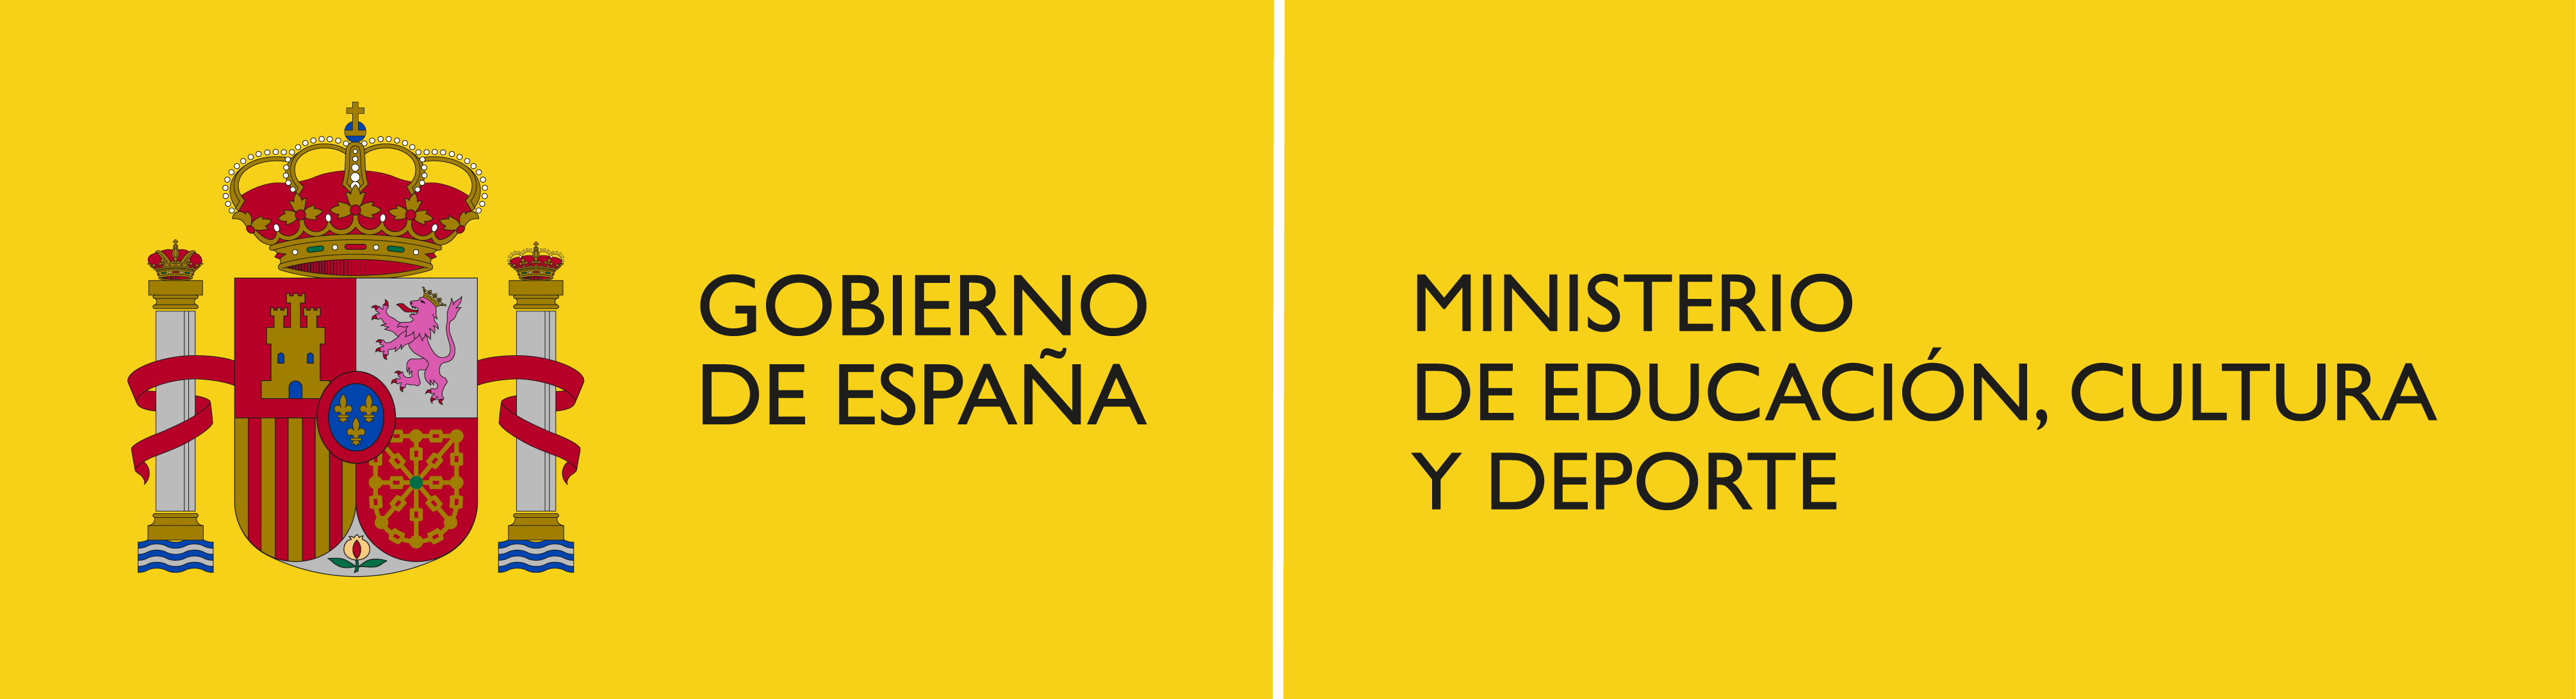 ministerio educación logo